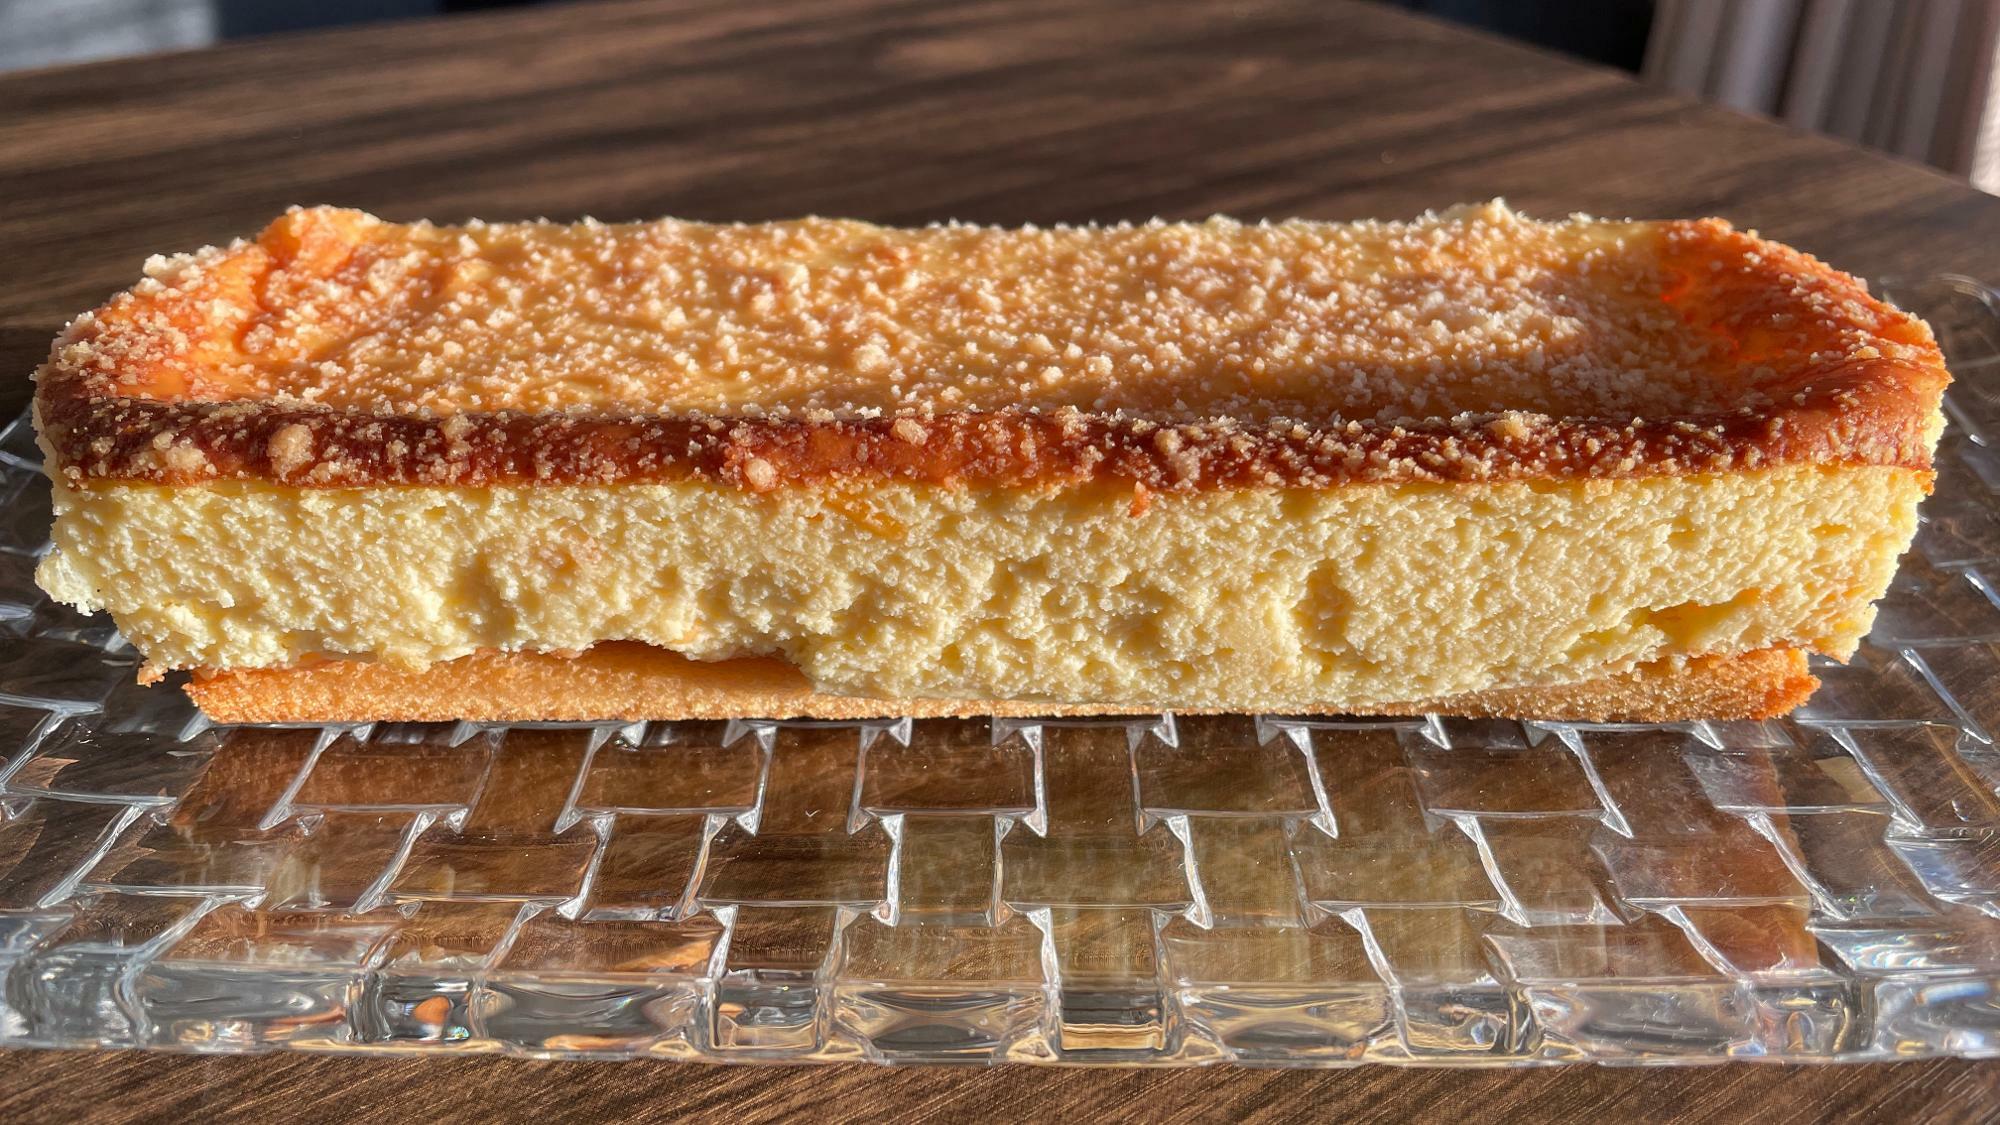 成城石井のチーズケーキといえばの、この棒状のチーズケーキ